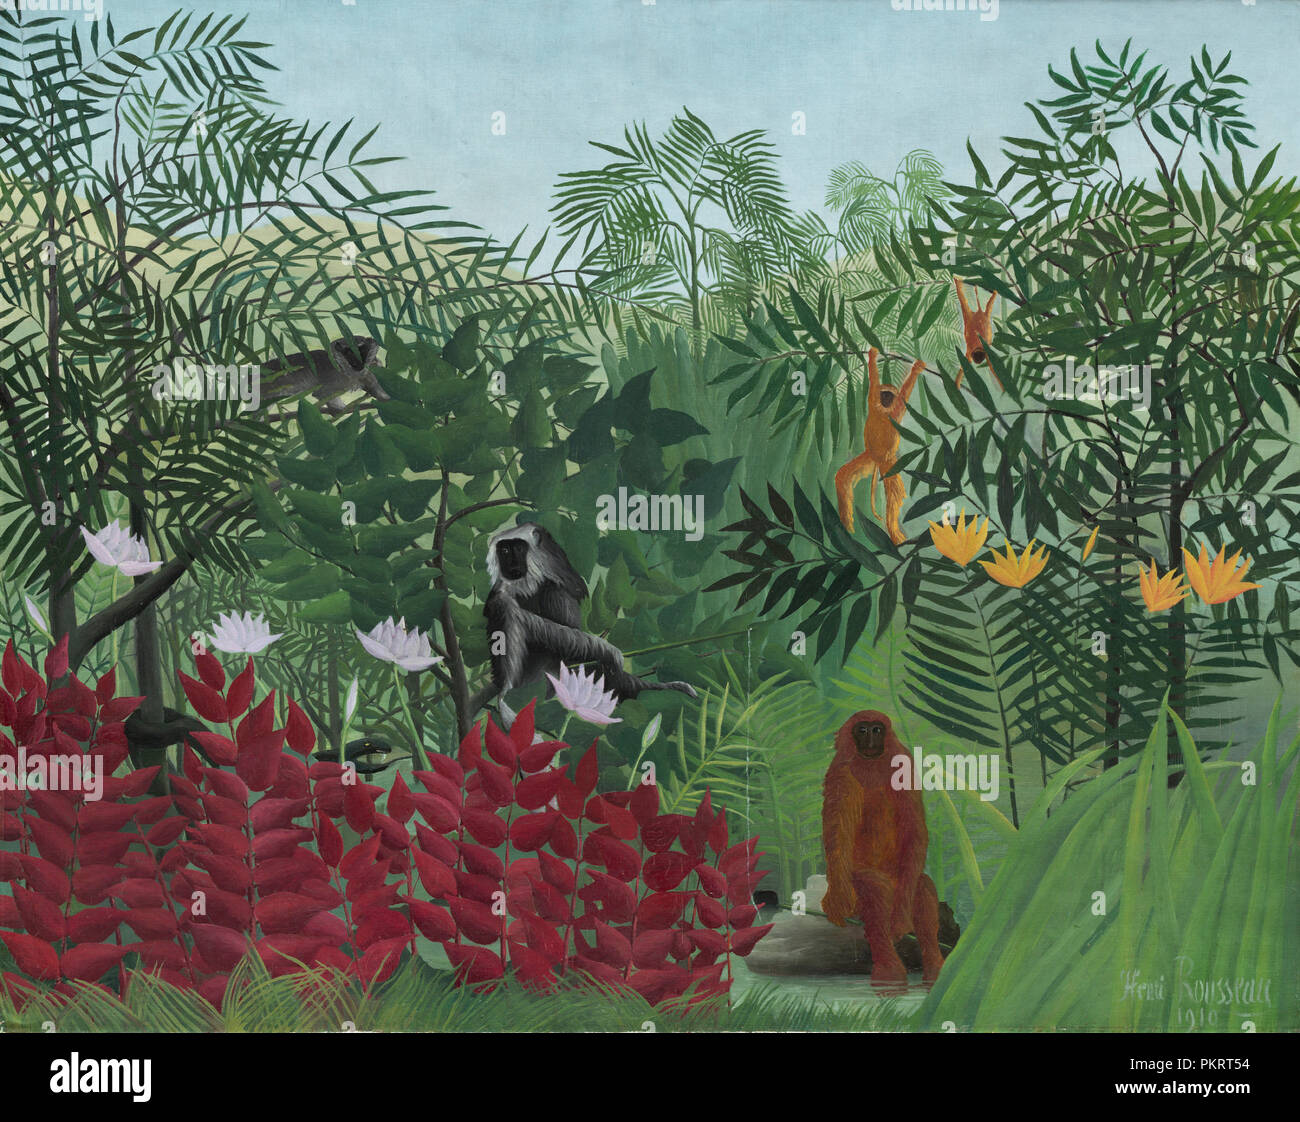 Forêt tropicale avec des singes. En date du : 1910. Dimensions : hors tout : 129,5 x 162,5 cm (51 x 64 in.) : 156,2 x 186,7 encadrées cm (61 1/2 x 73 1/2 in.). Médium : Huile sur toile. Musée : National Gallery of Art, Washington DC. Auteur : Henri Rousseau. Banque D'Images